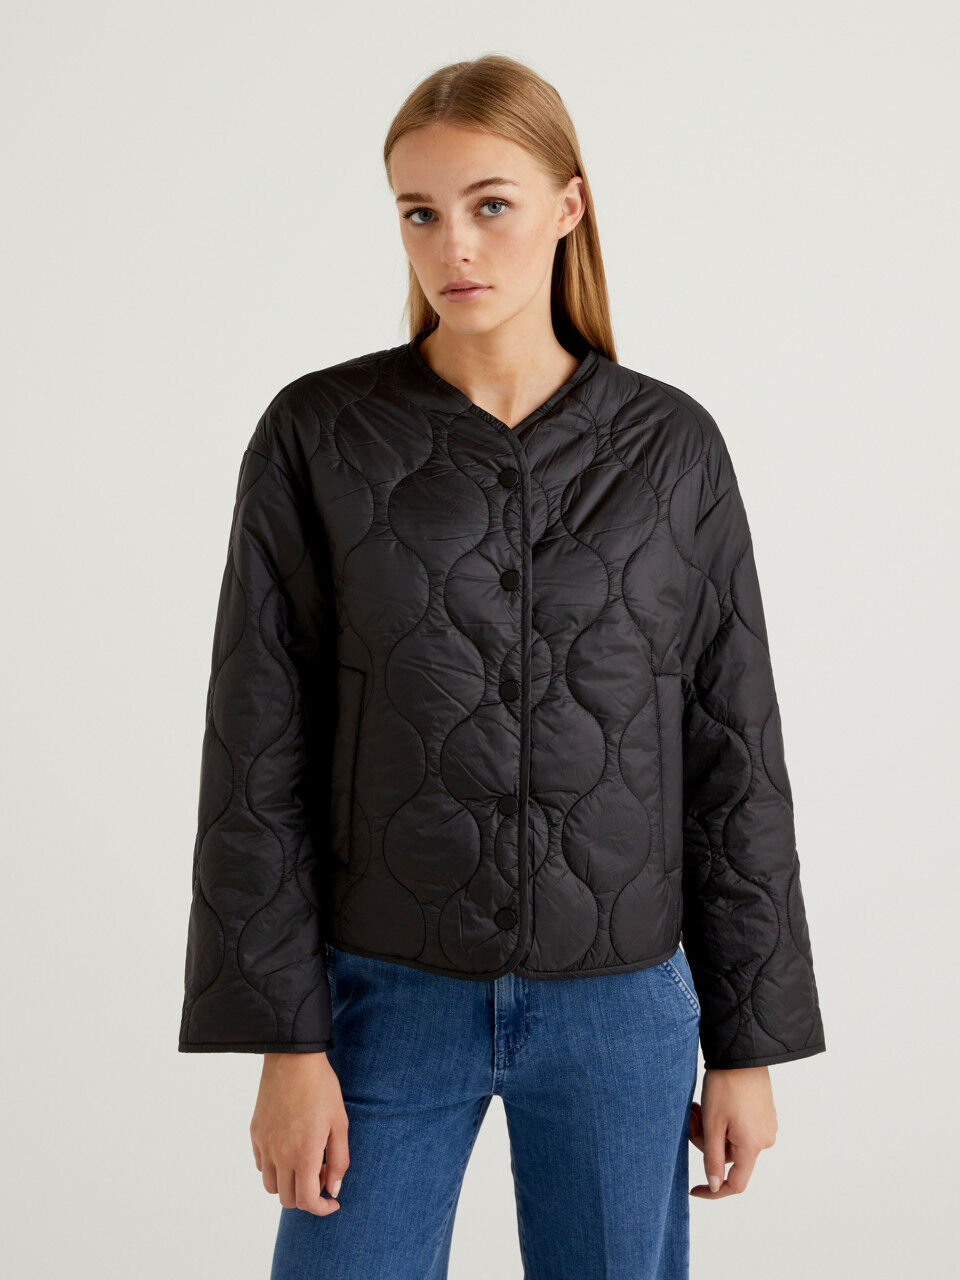 WOODLAND Jackets : Buy WOODLAND Black Jacket Online | Nykaa Fashion